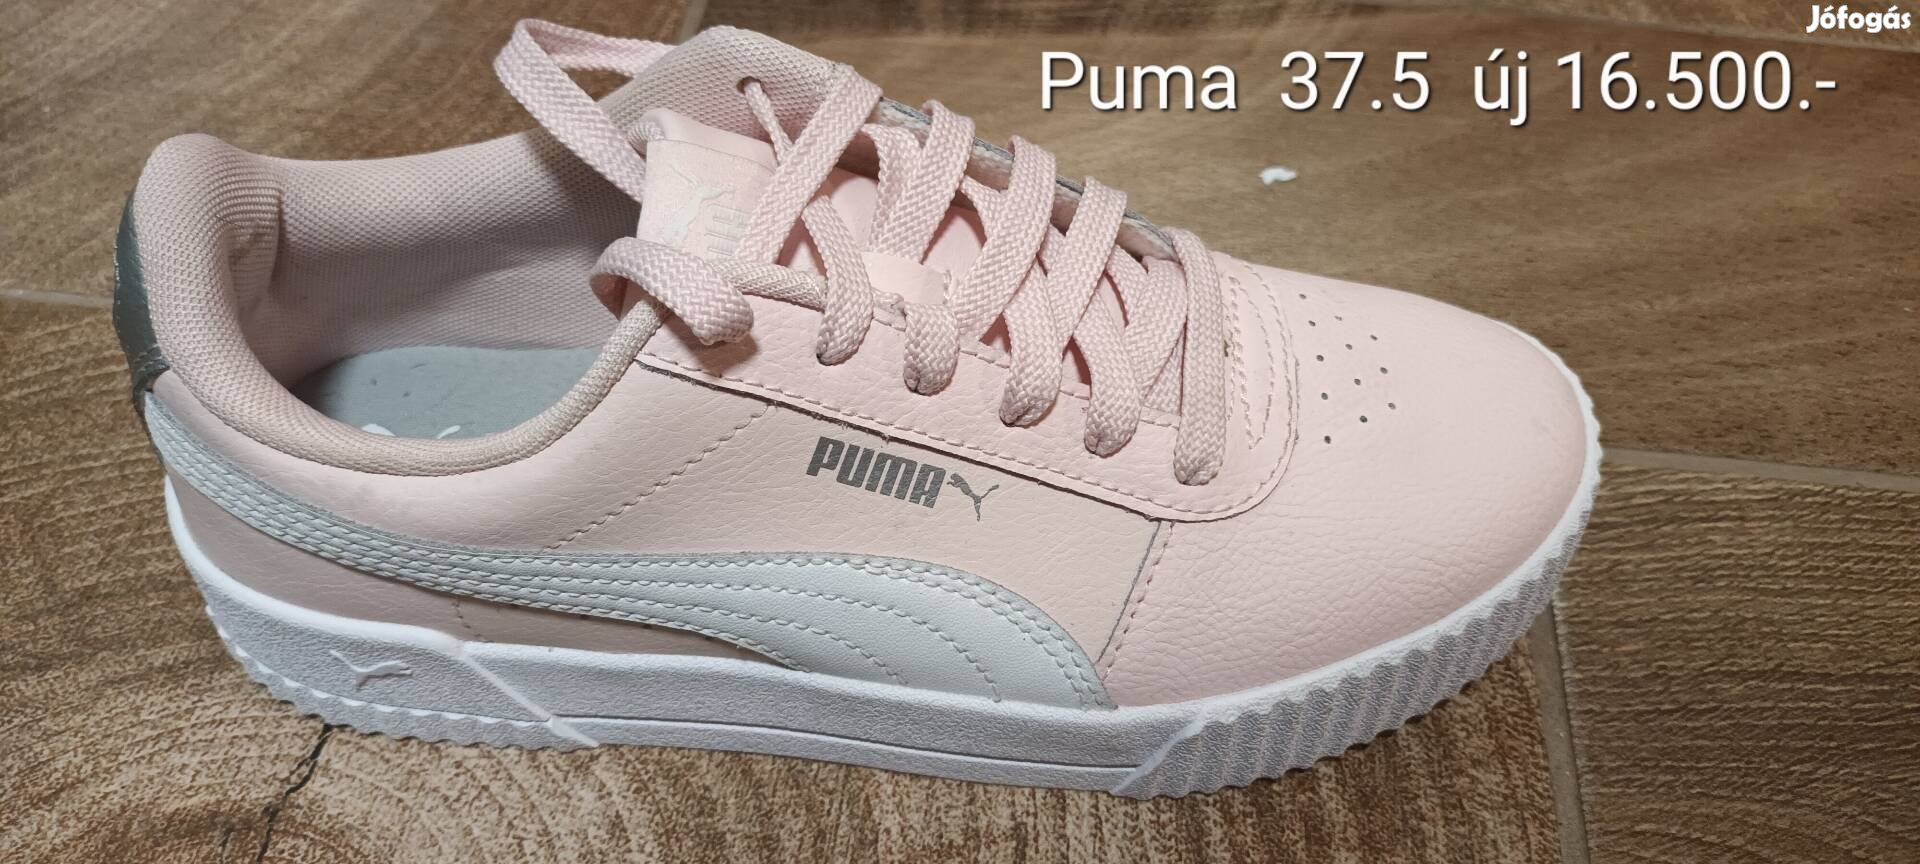 Puma cipő eladó! Új! 37.5